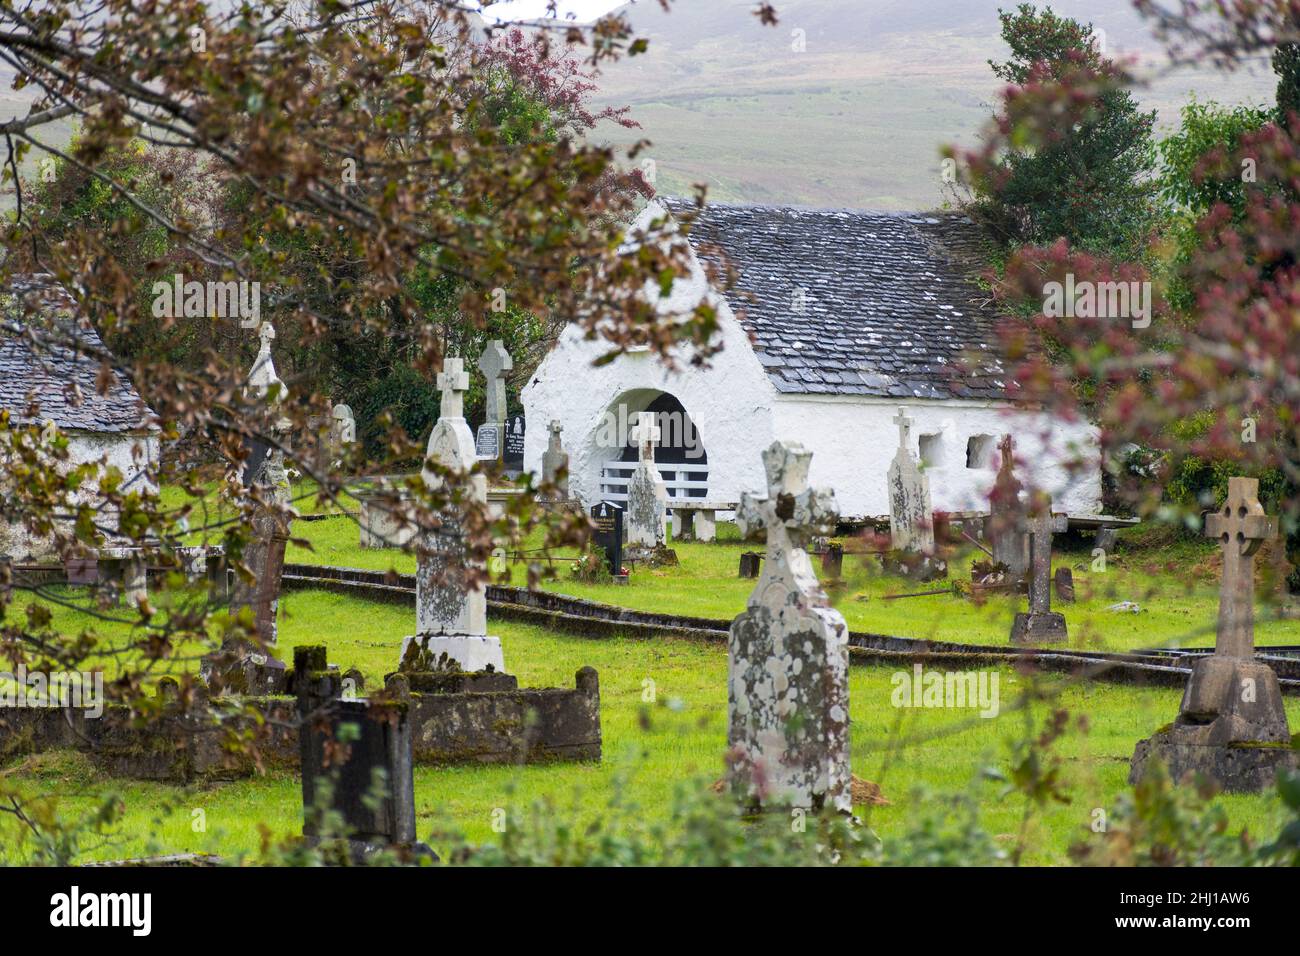 Cementerio antiguo cementerio cementerio en Glenties, Condado de Donegal, Irlanda Foto de stock